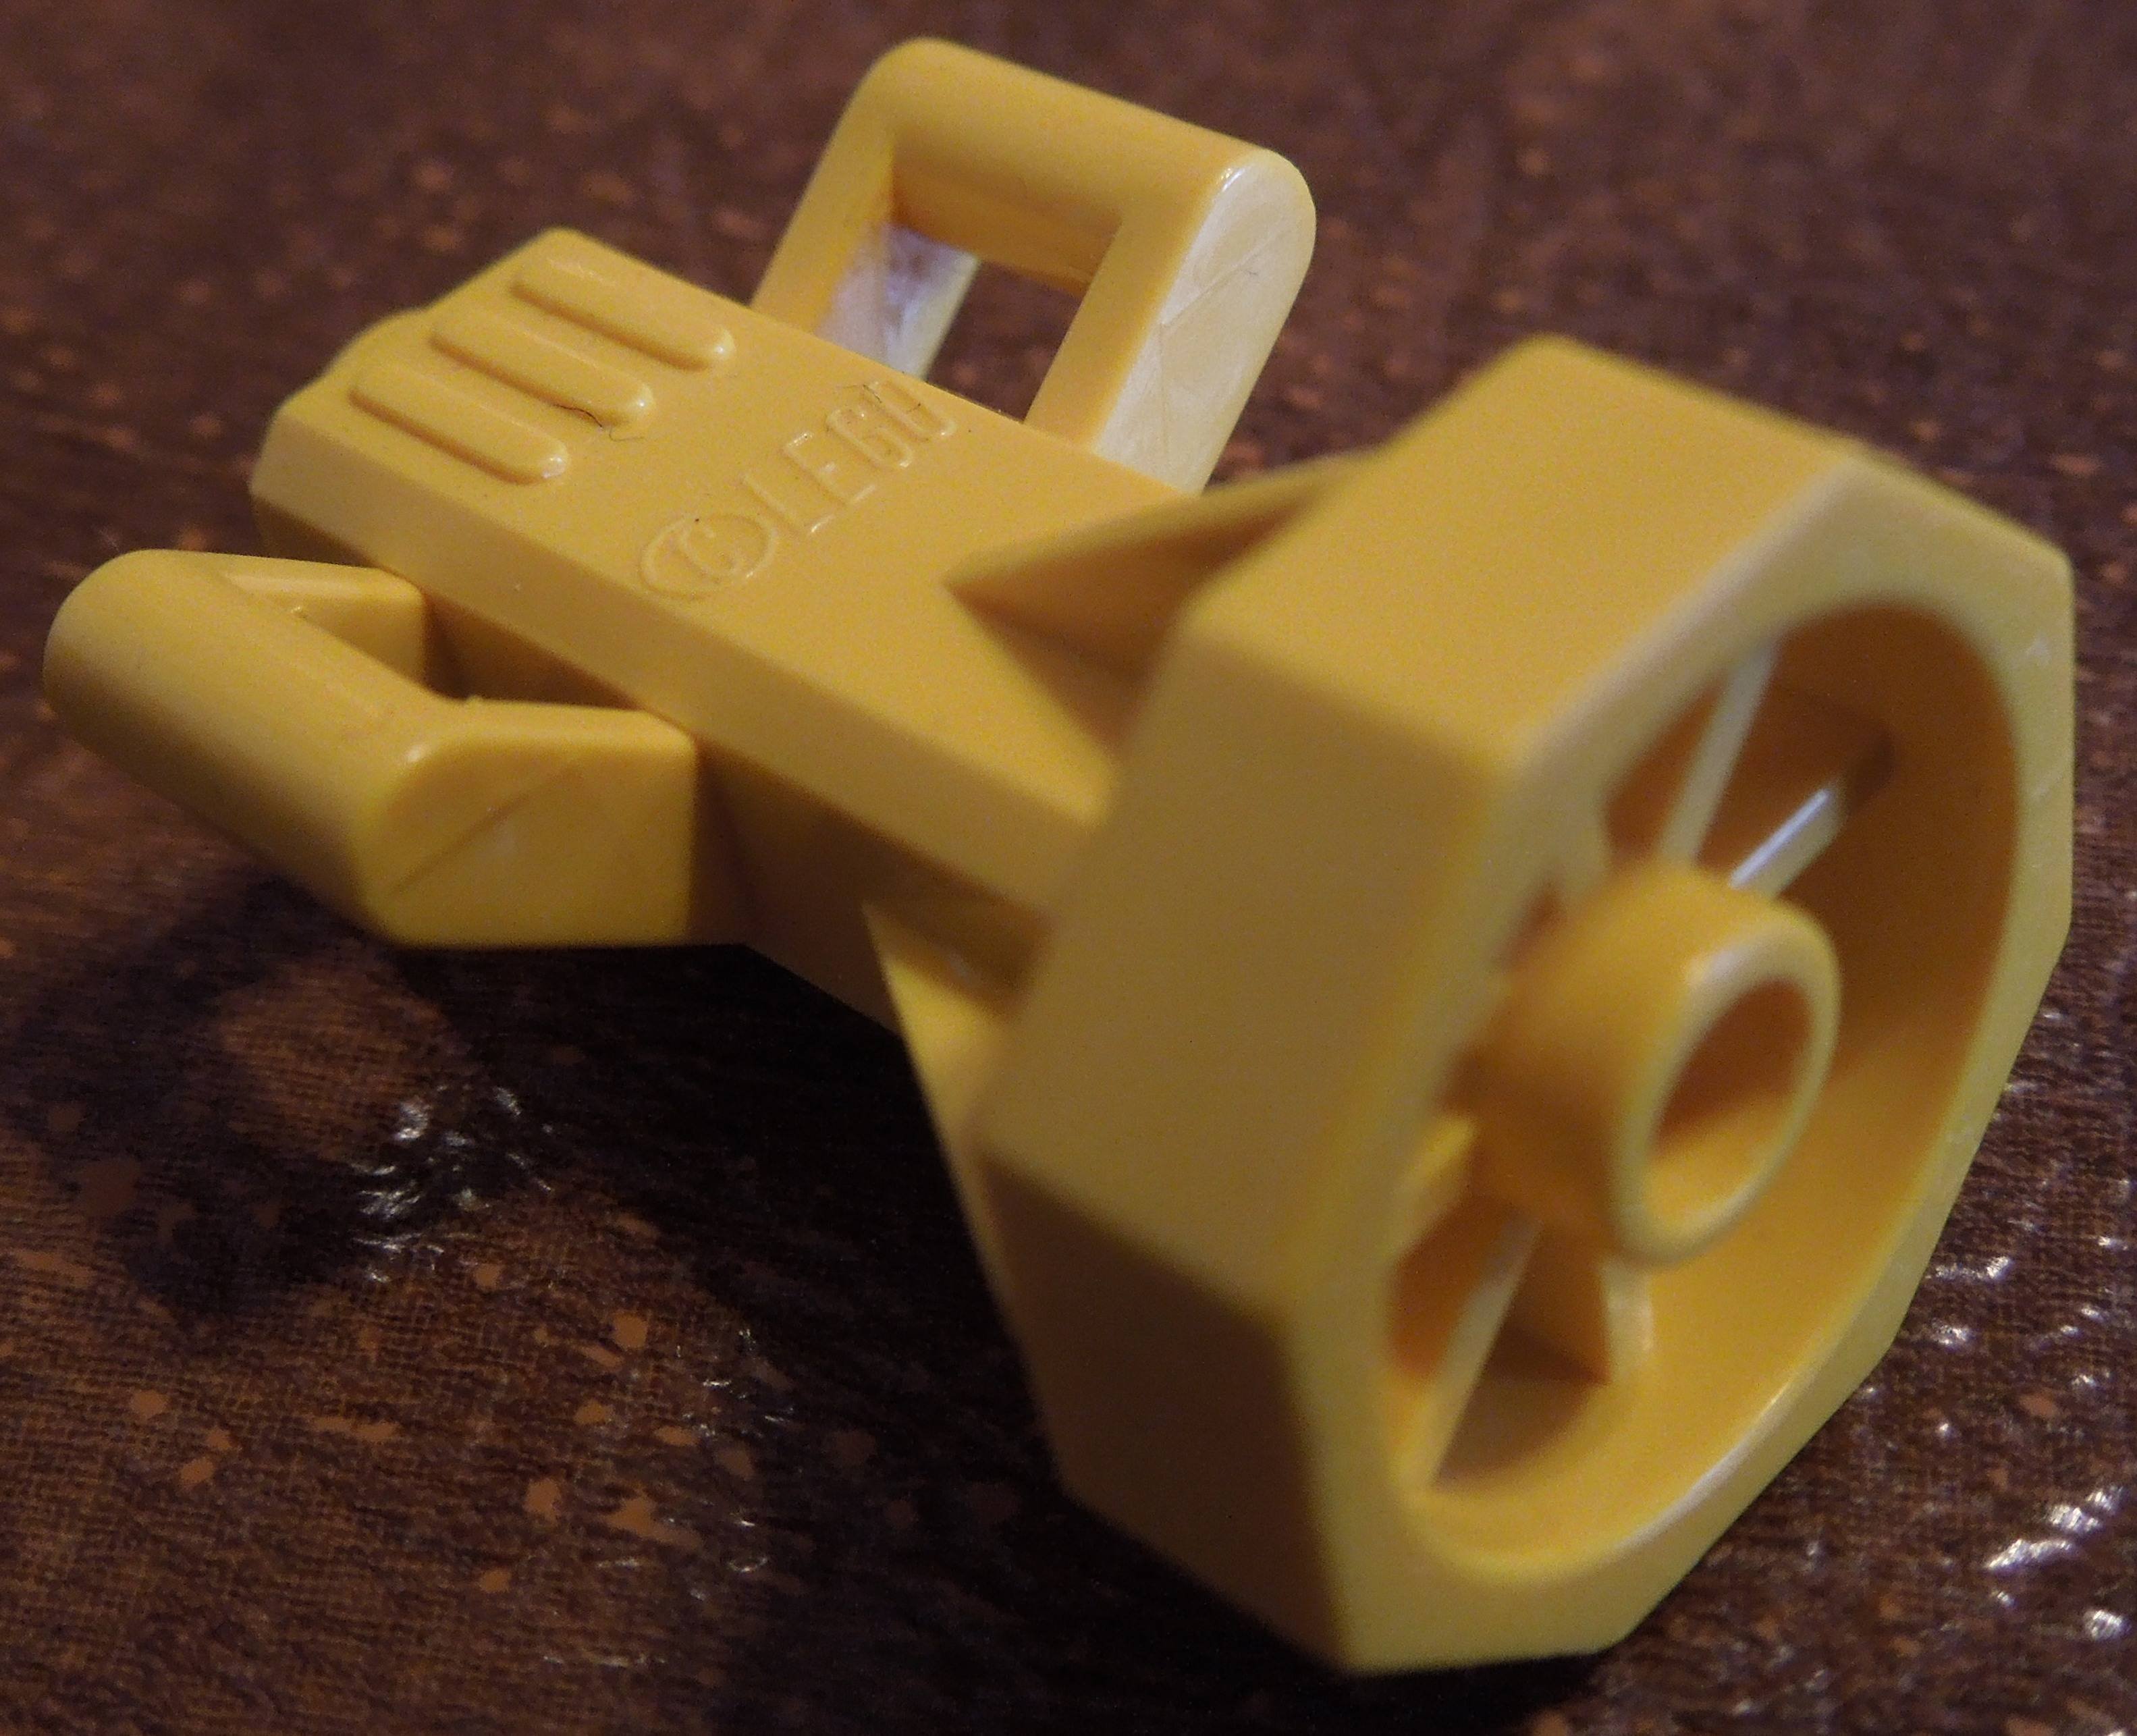 yellow Lego piece